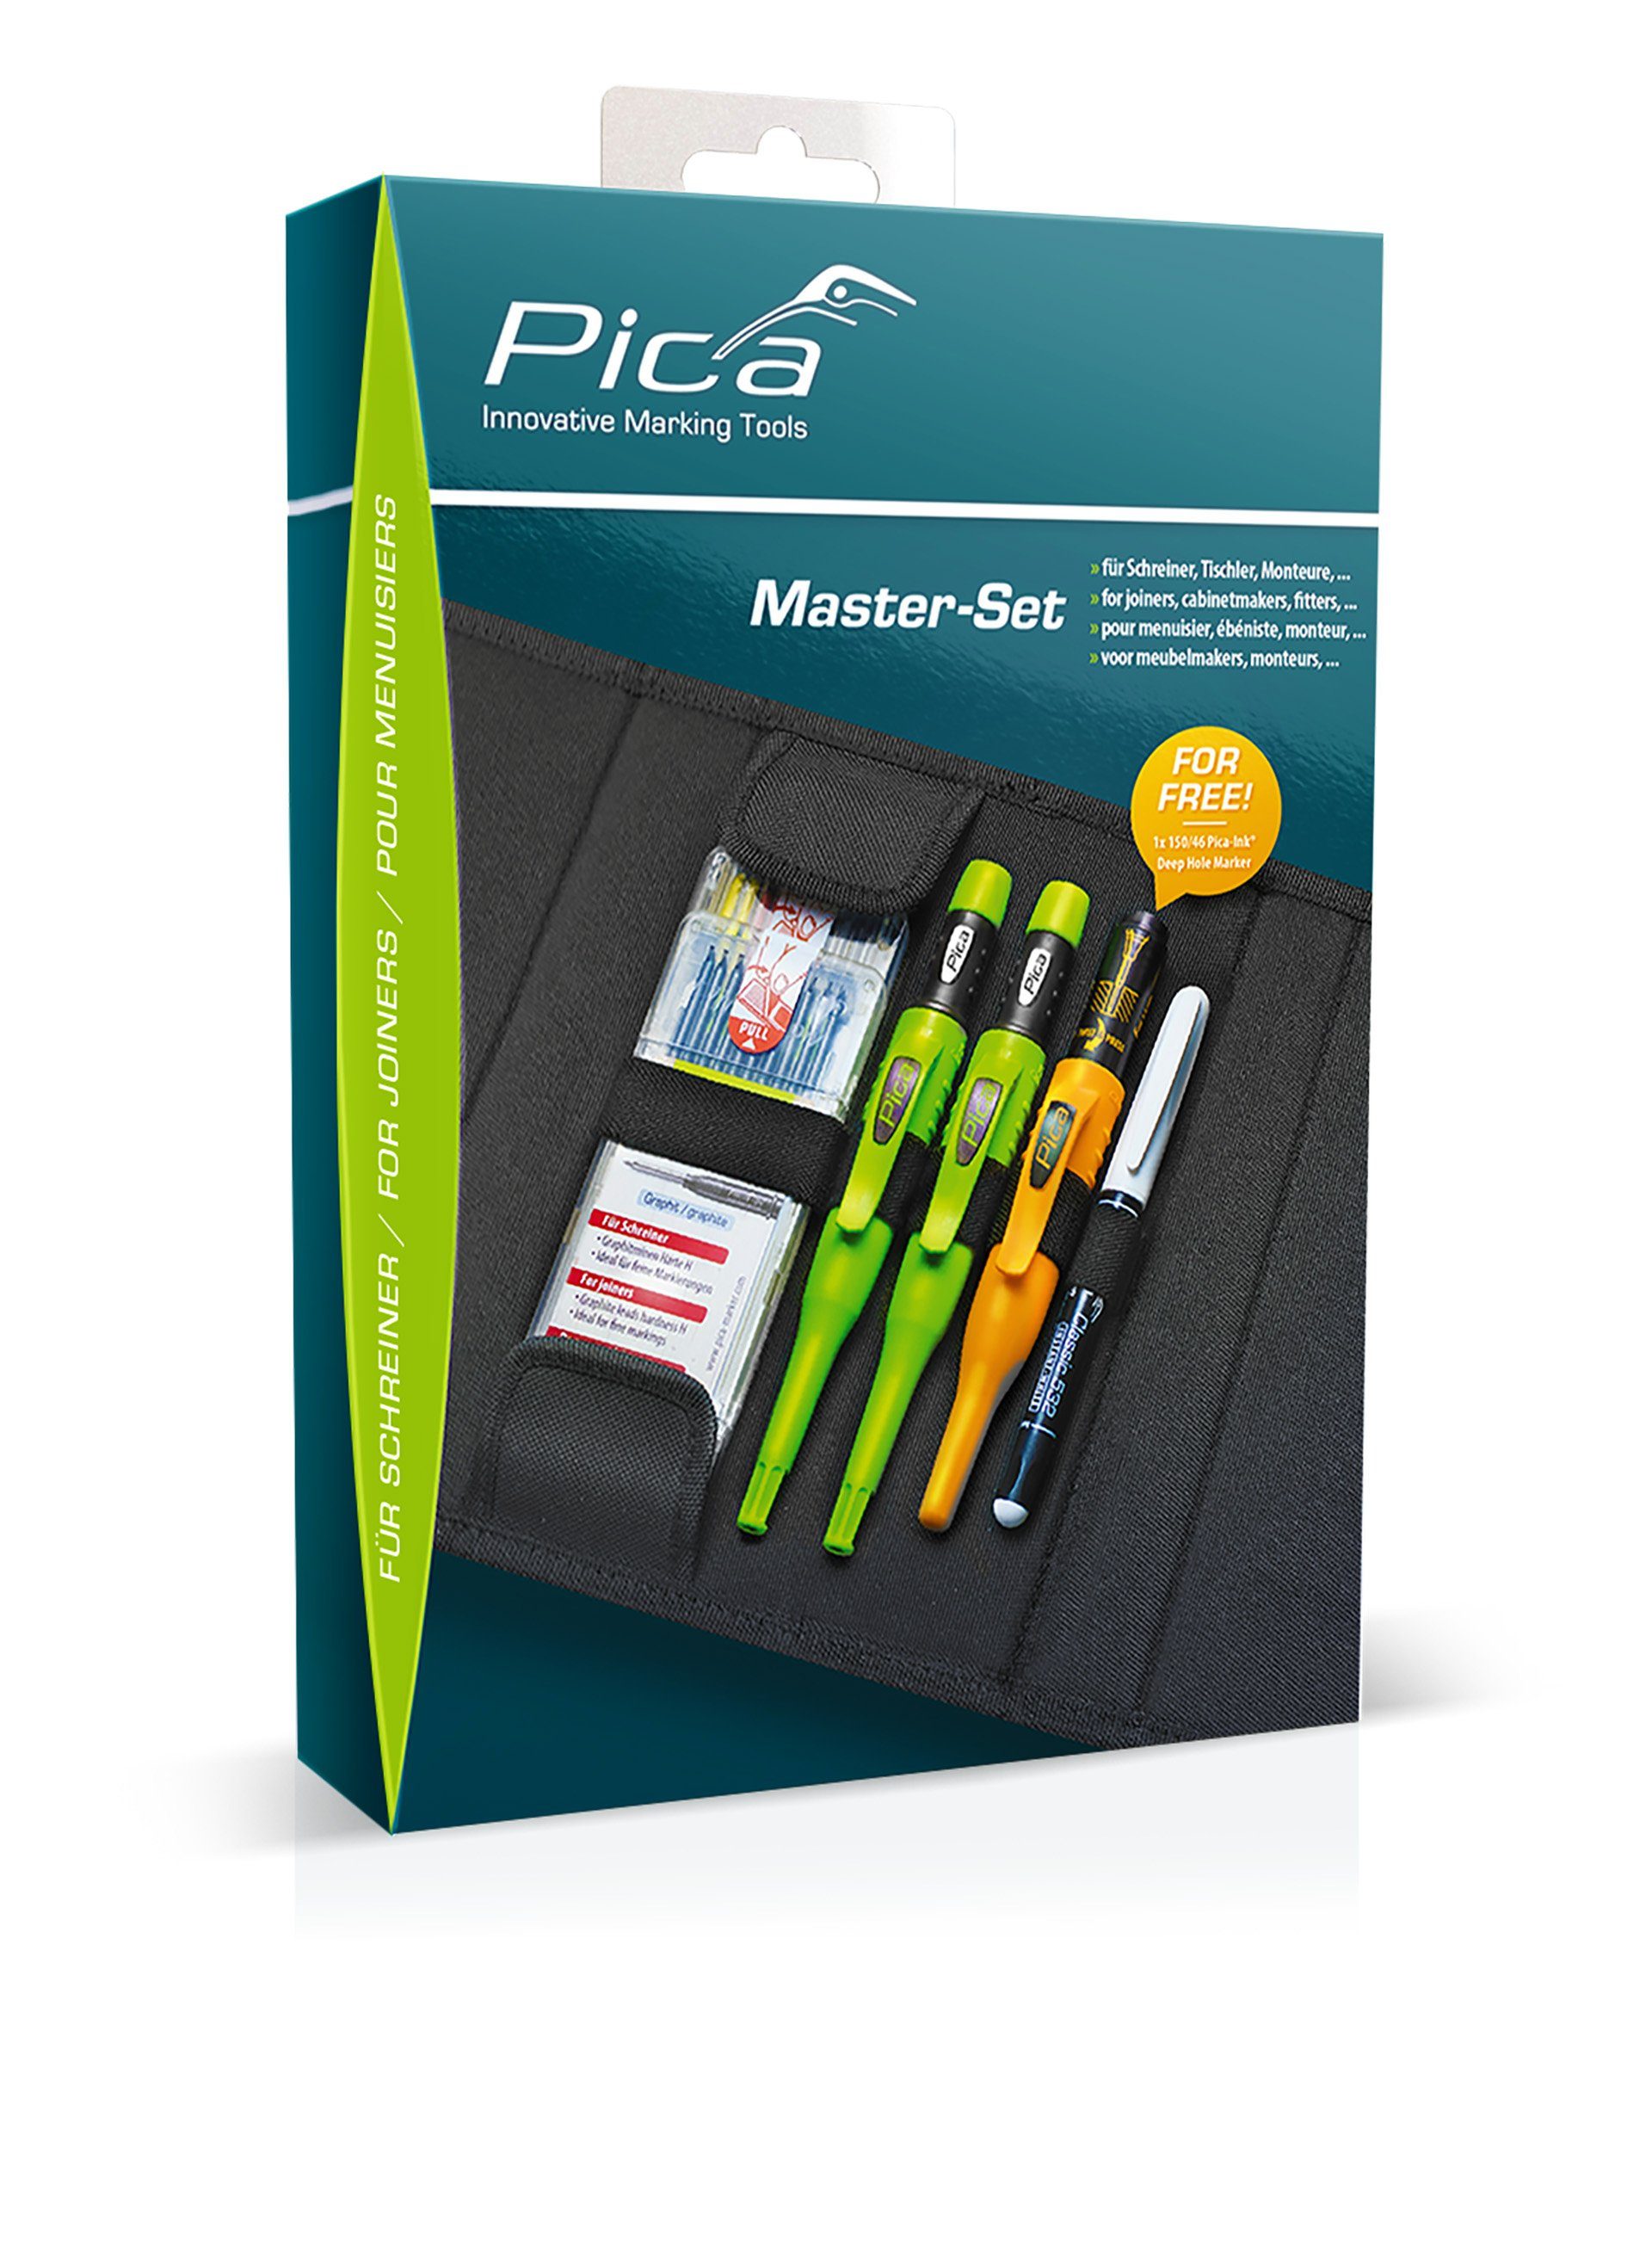 Minen Ink Dry Schreiner + Pica Marker Pica + Tieflochmarker Set Master